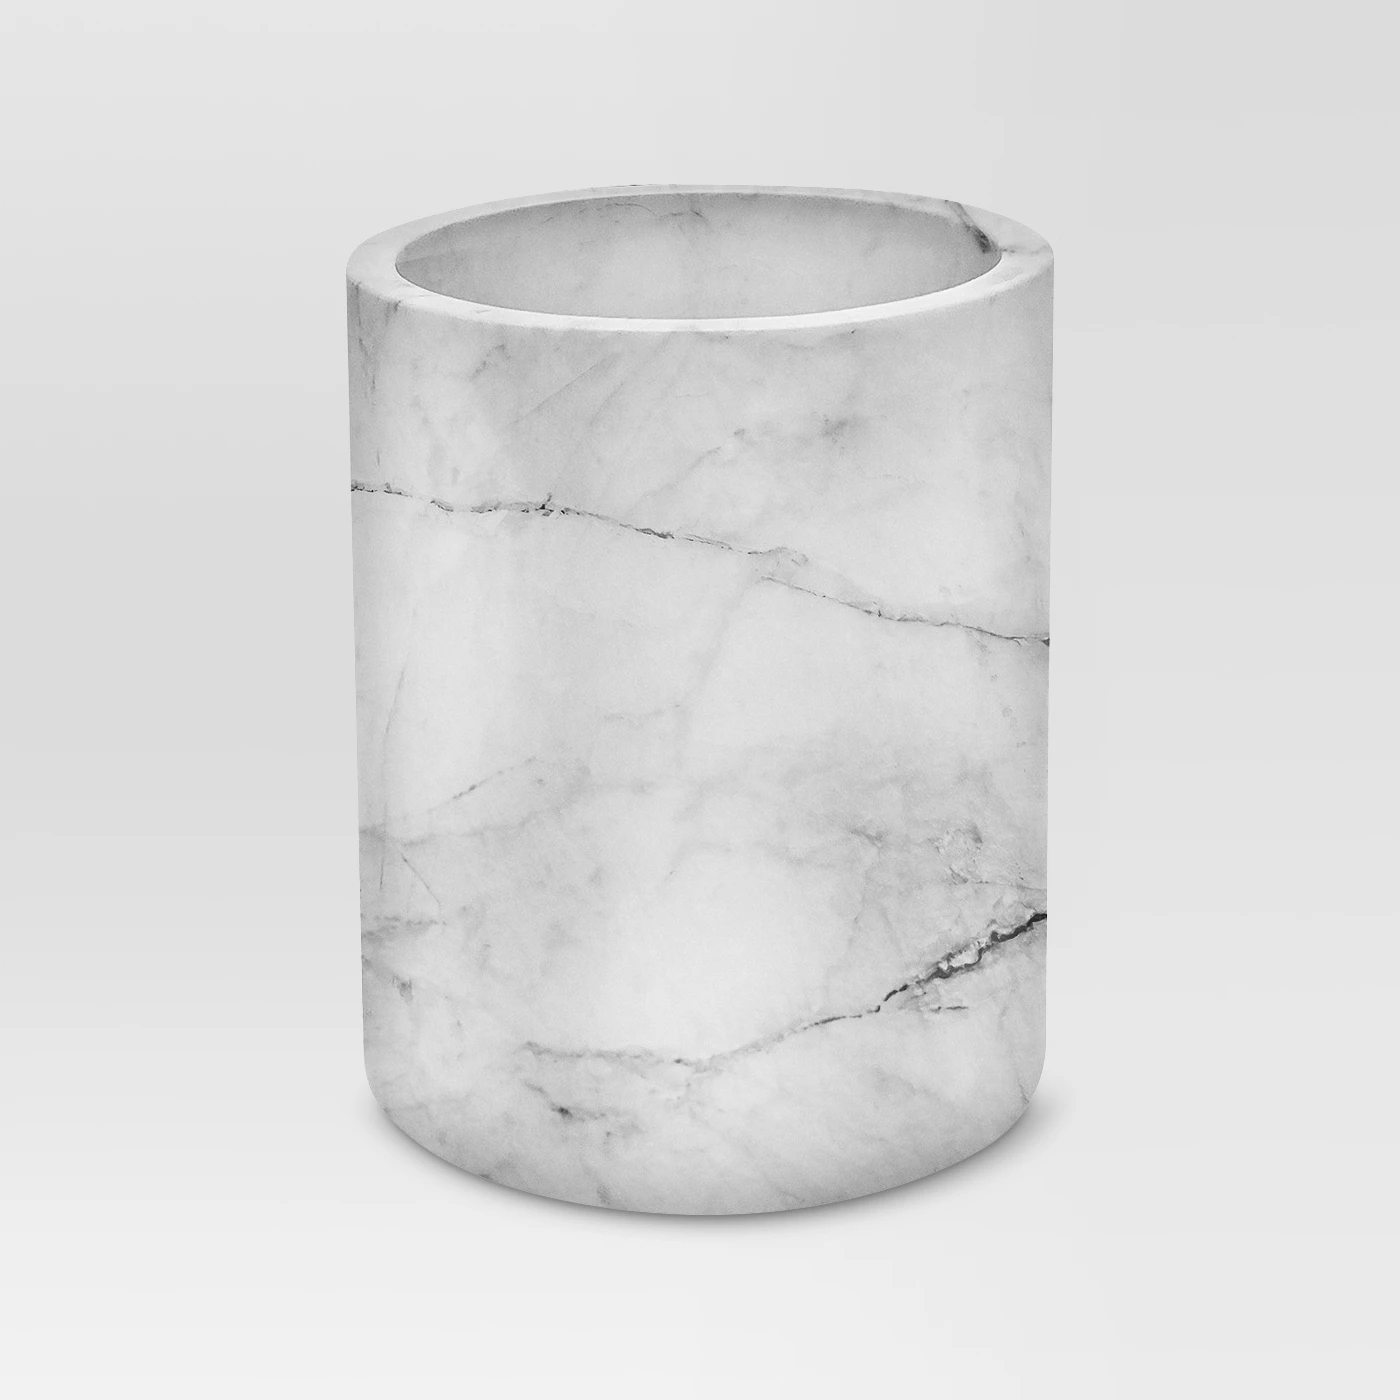 Large Marble Utensil Holder - Threshold. #marble #utensilholders #homedecor